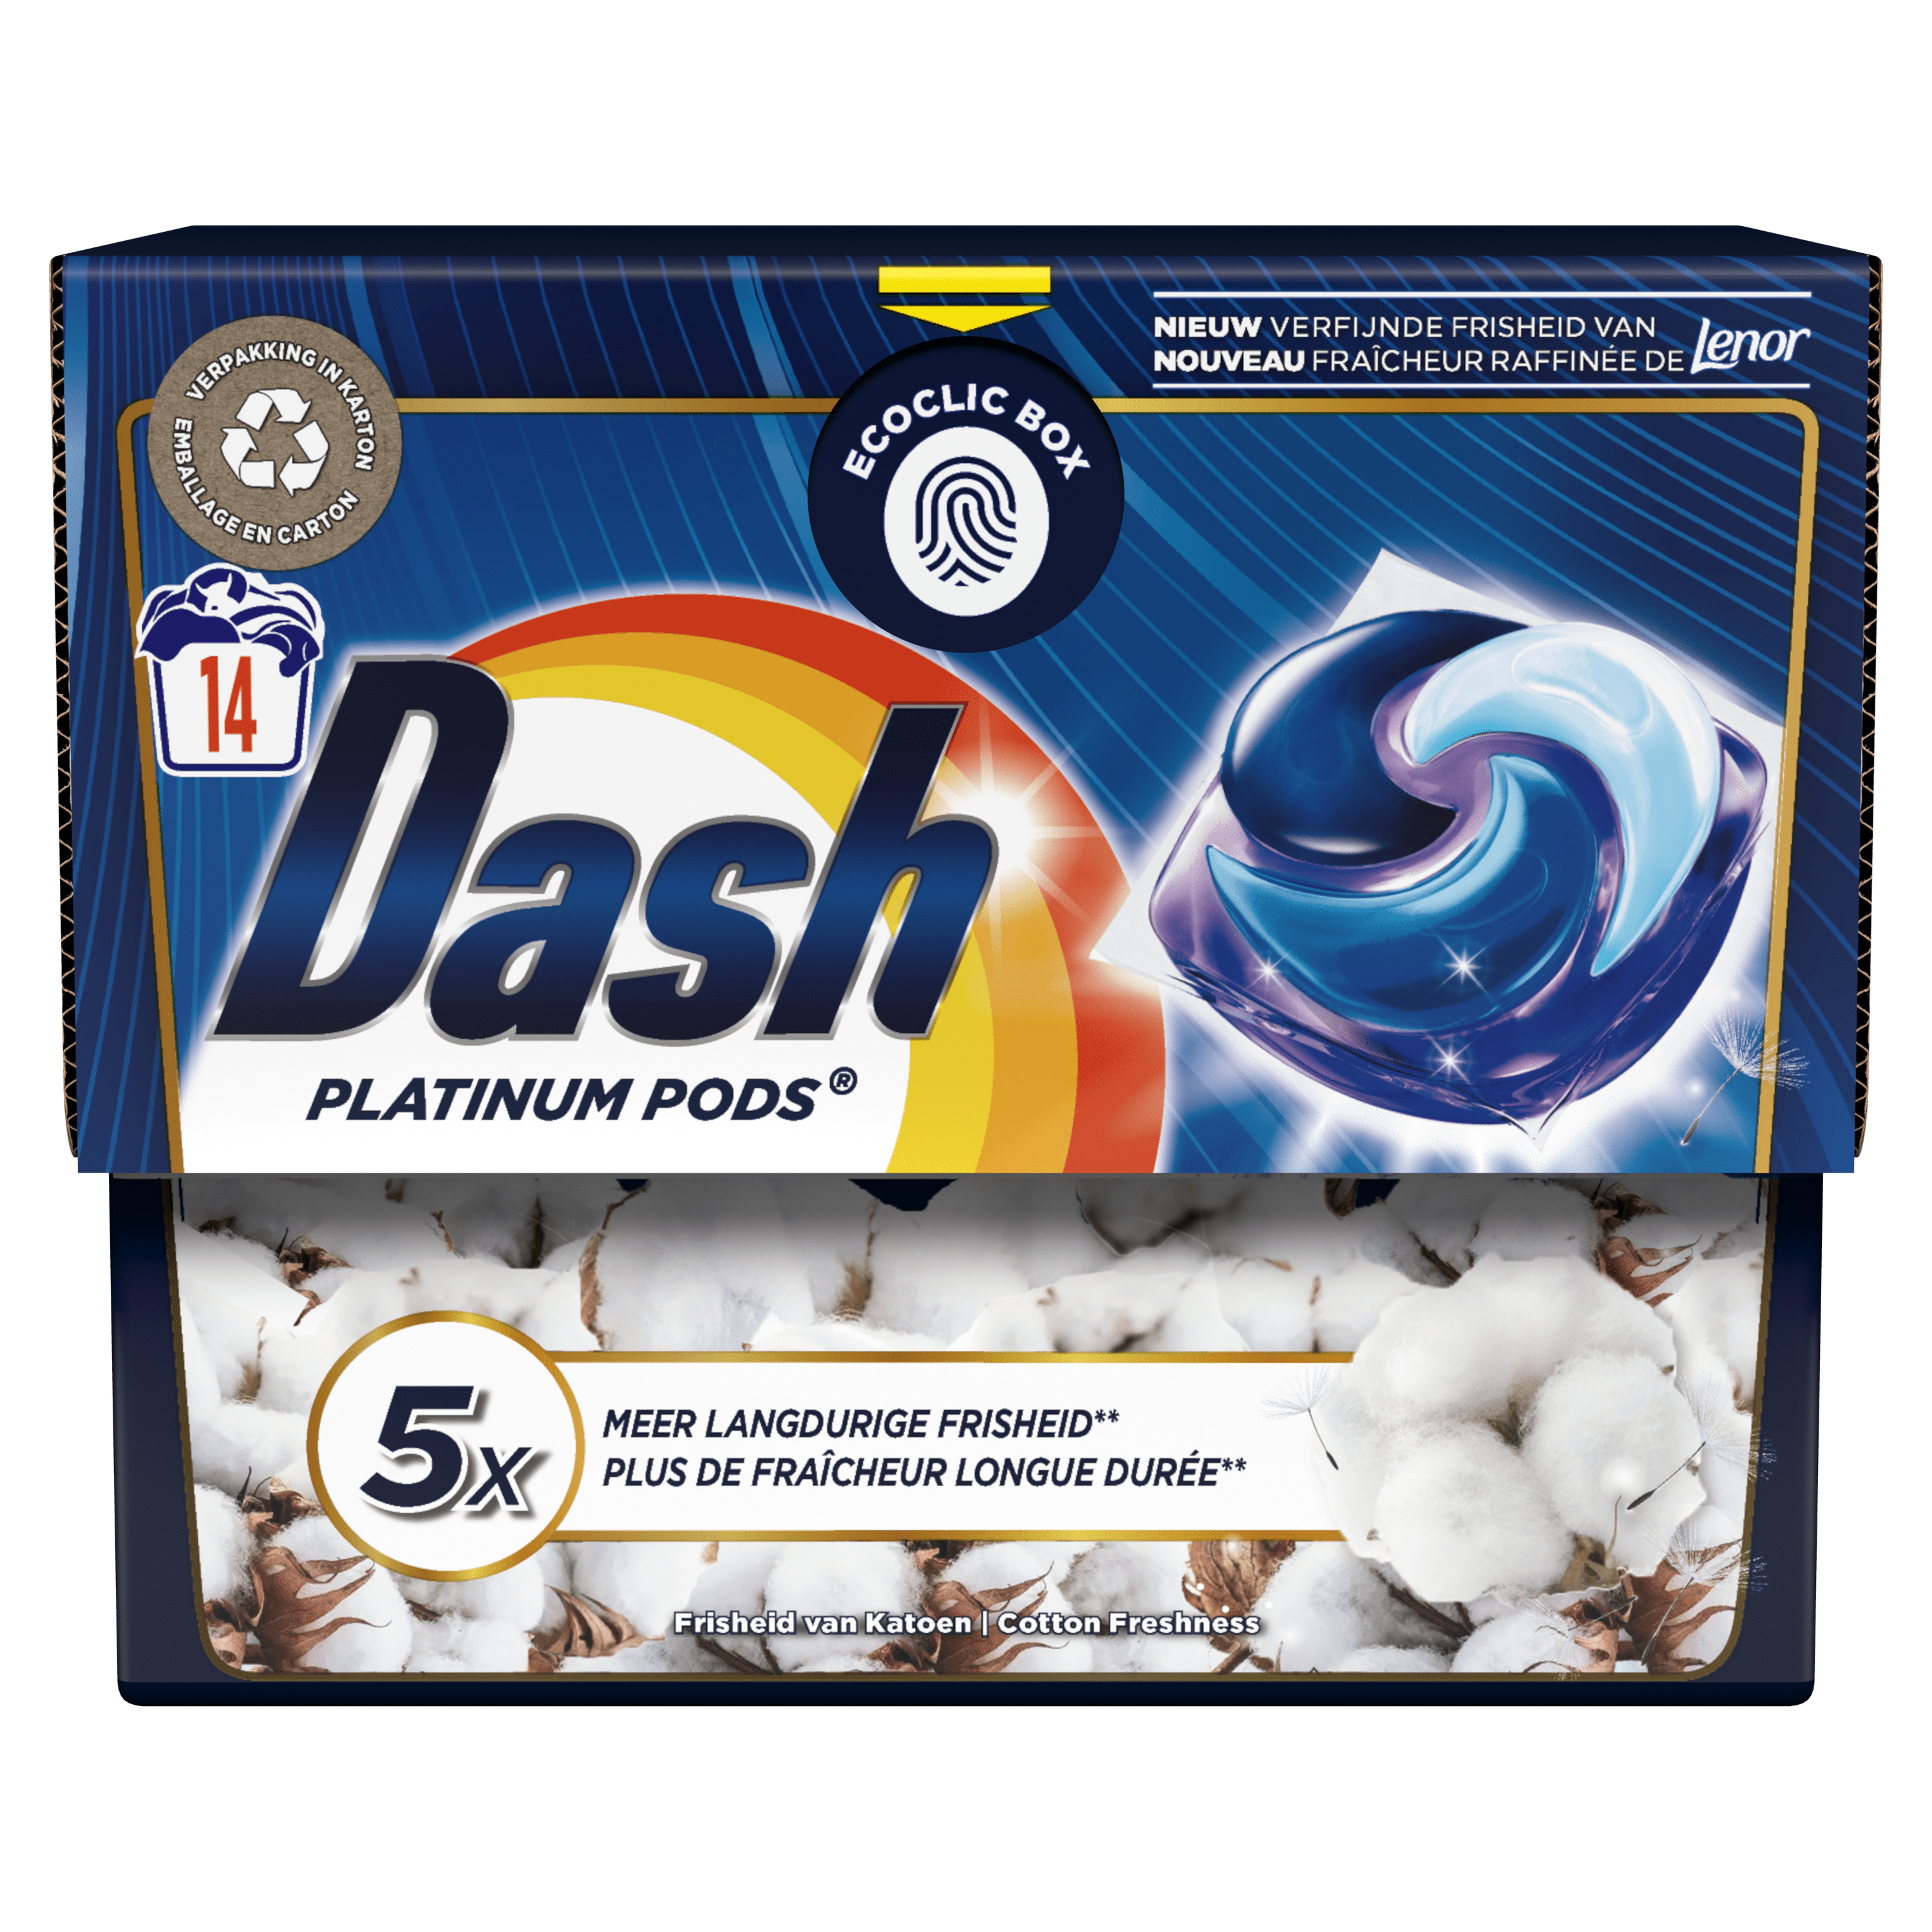 Dash Allin1 Pods Couleurs Éclatantes